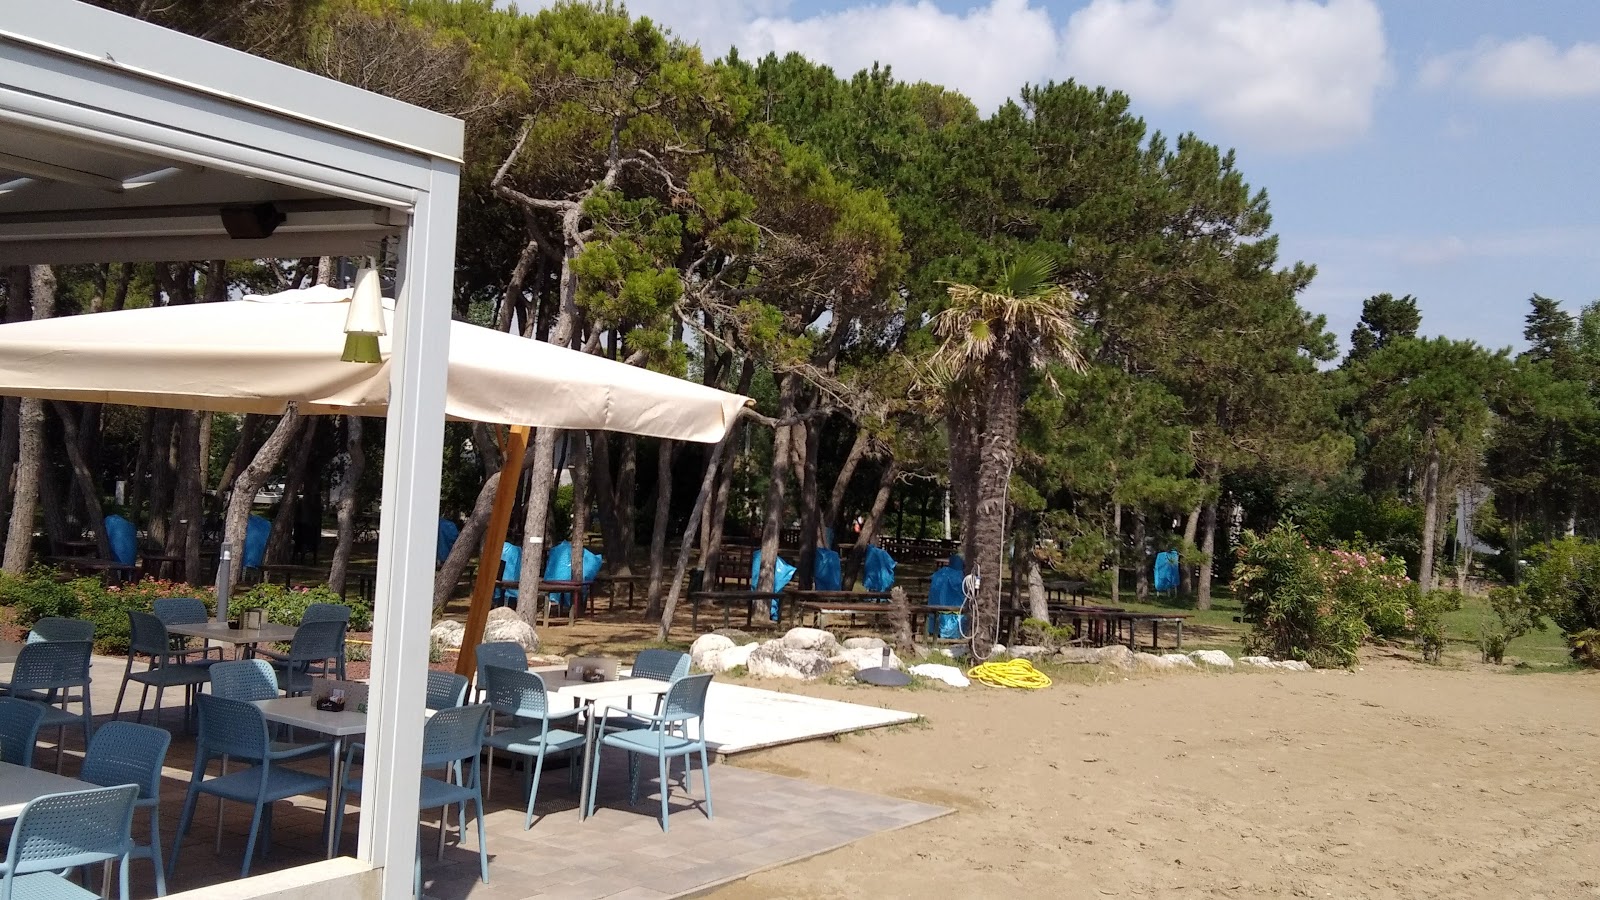 Foto af Spiaggia Libera Caorle - populært sted blandt afslapningskendere